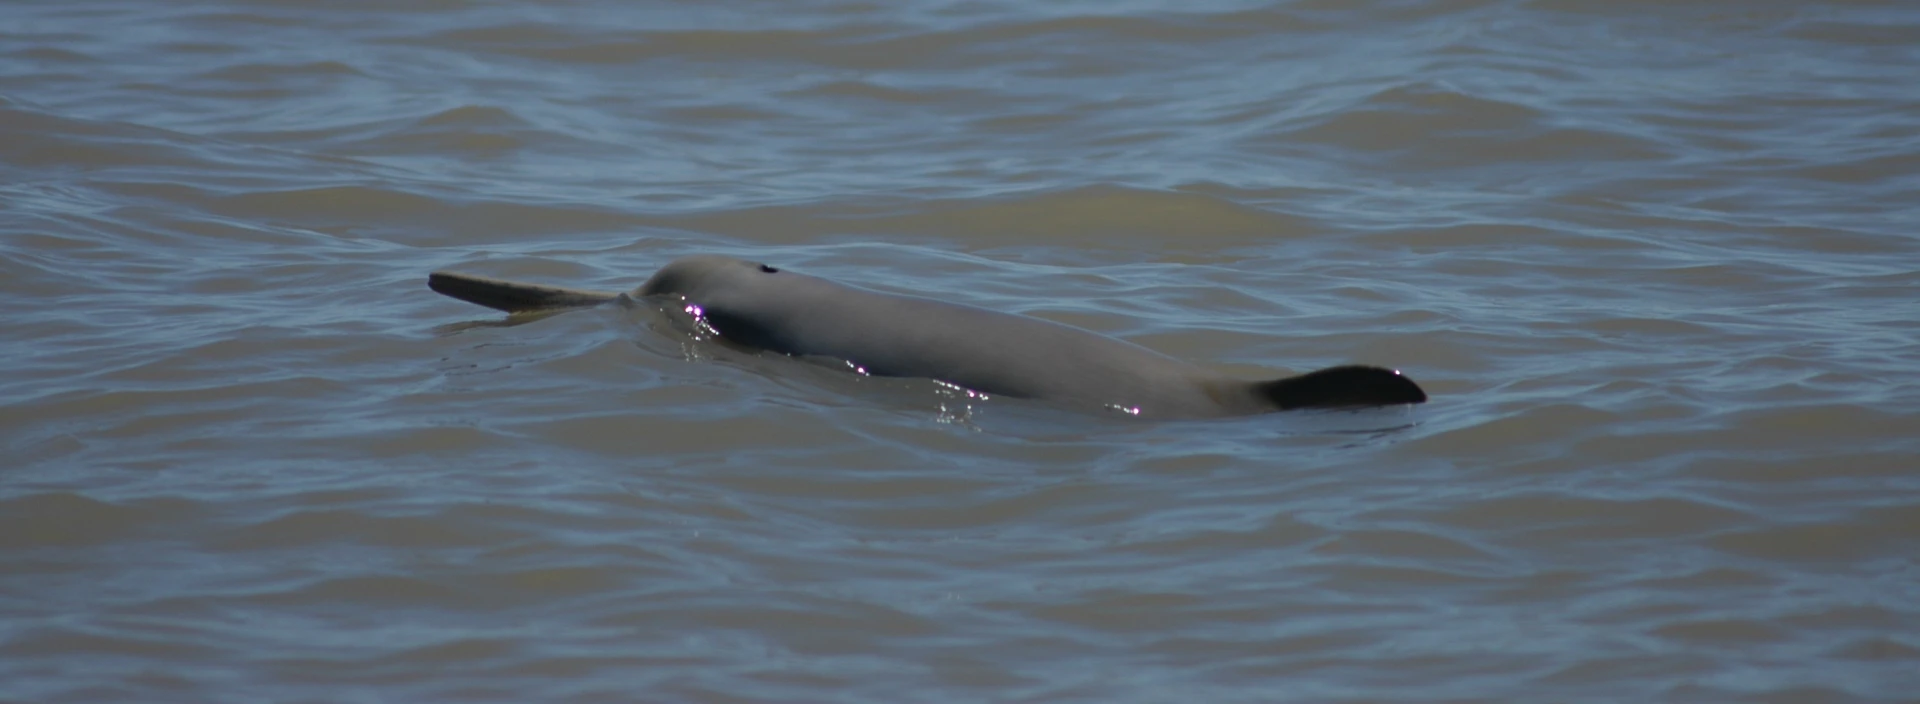 Delfin franciscana